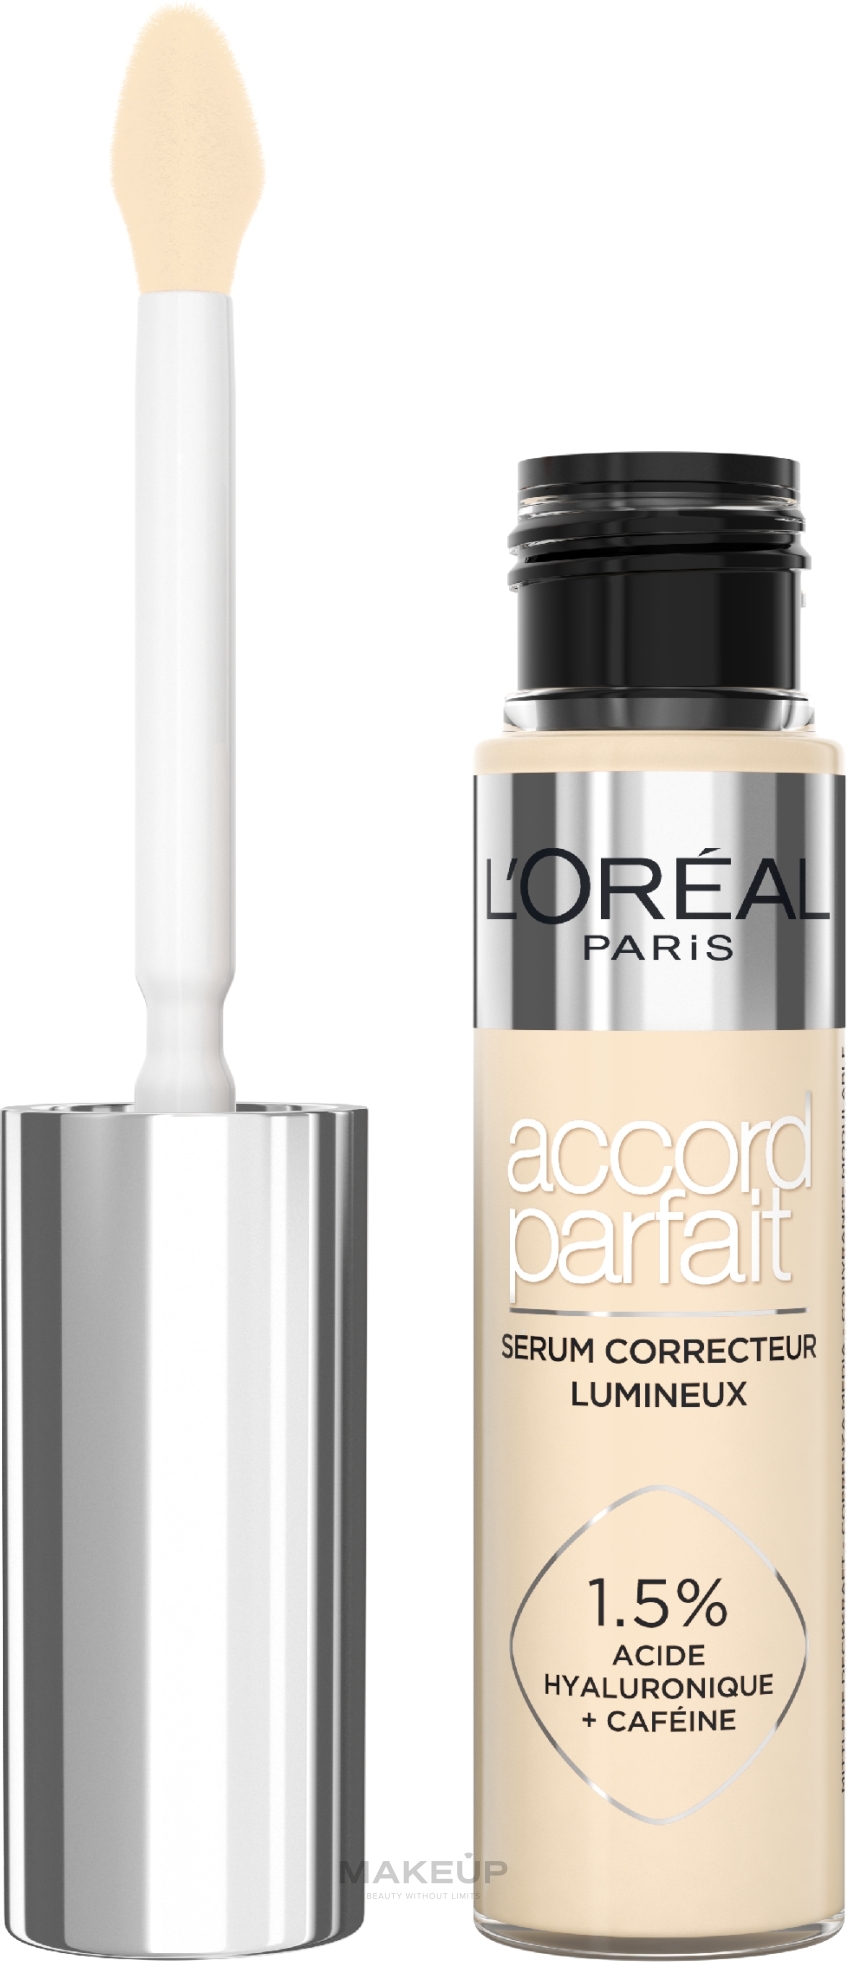 Brightening Serum - L'Oreal Paris Accord Parfait Radiant Serum Concelaer — photo 0.5D